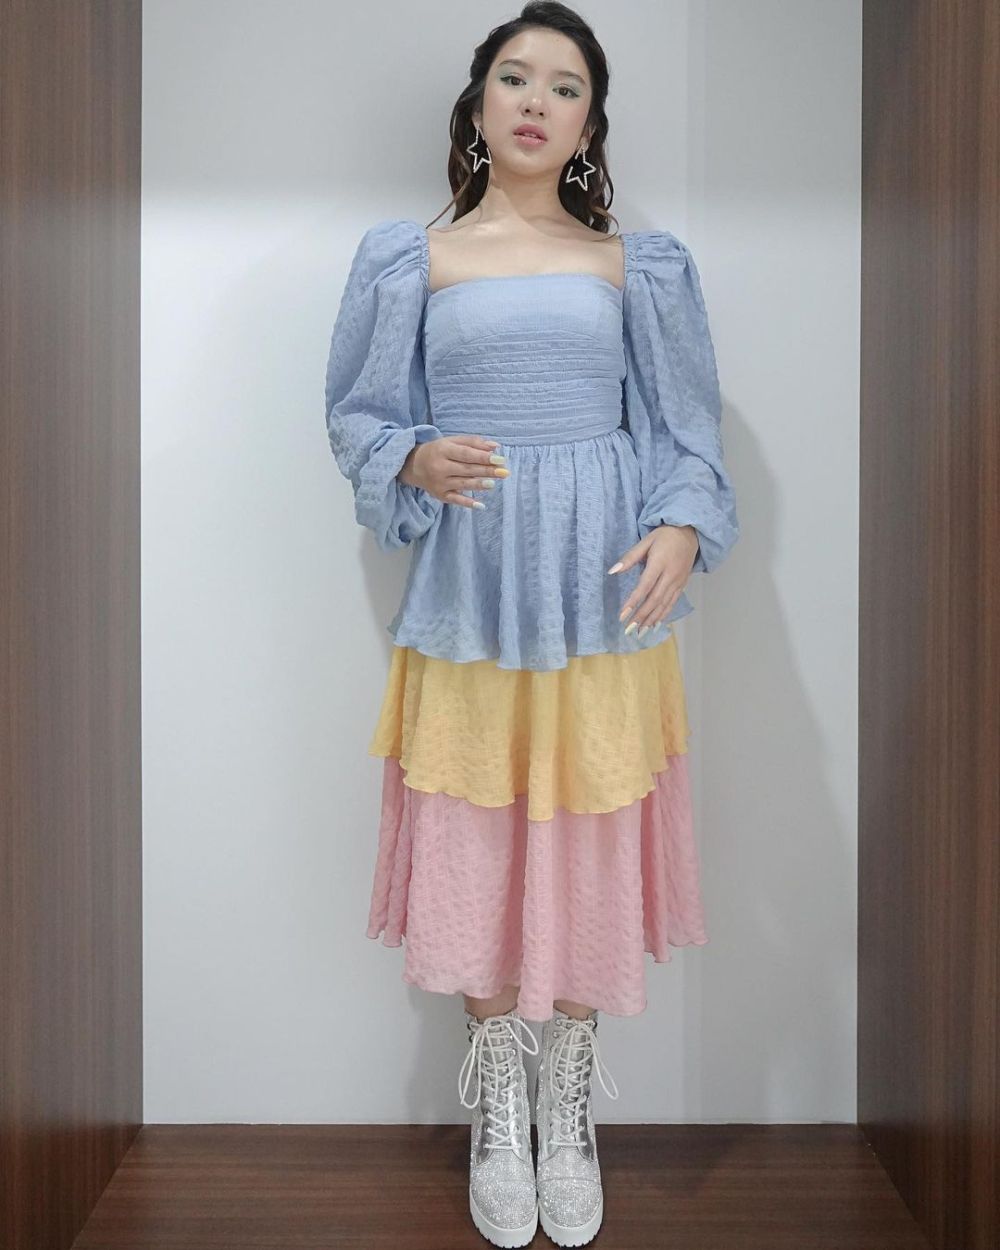 9 Rekomendasi Outfit Estetik Ala Tiara Andiri, Stunning Banget!